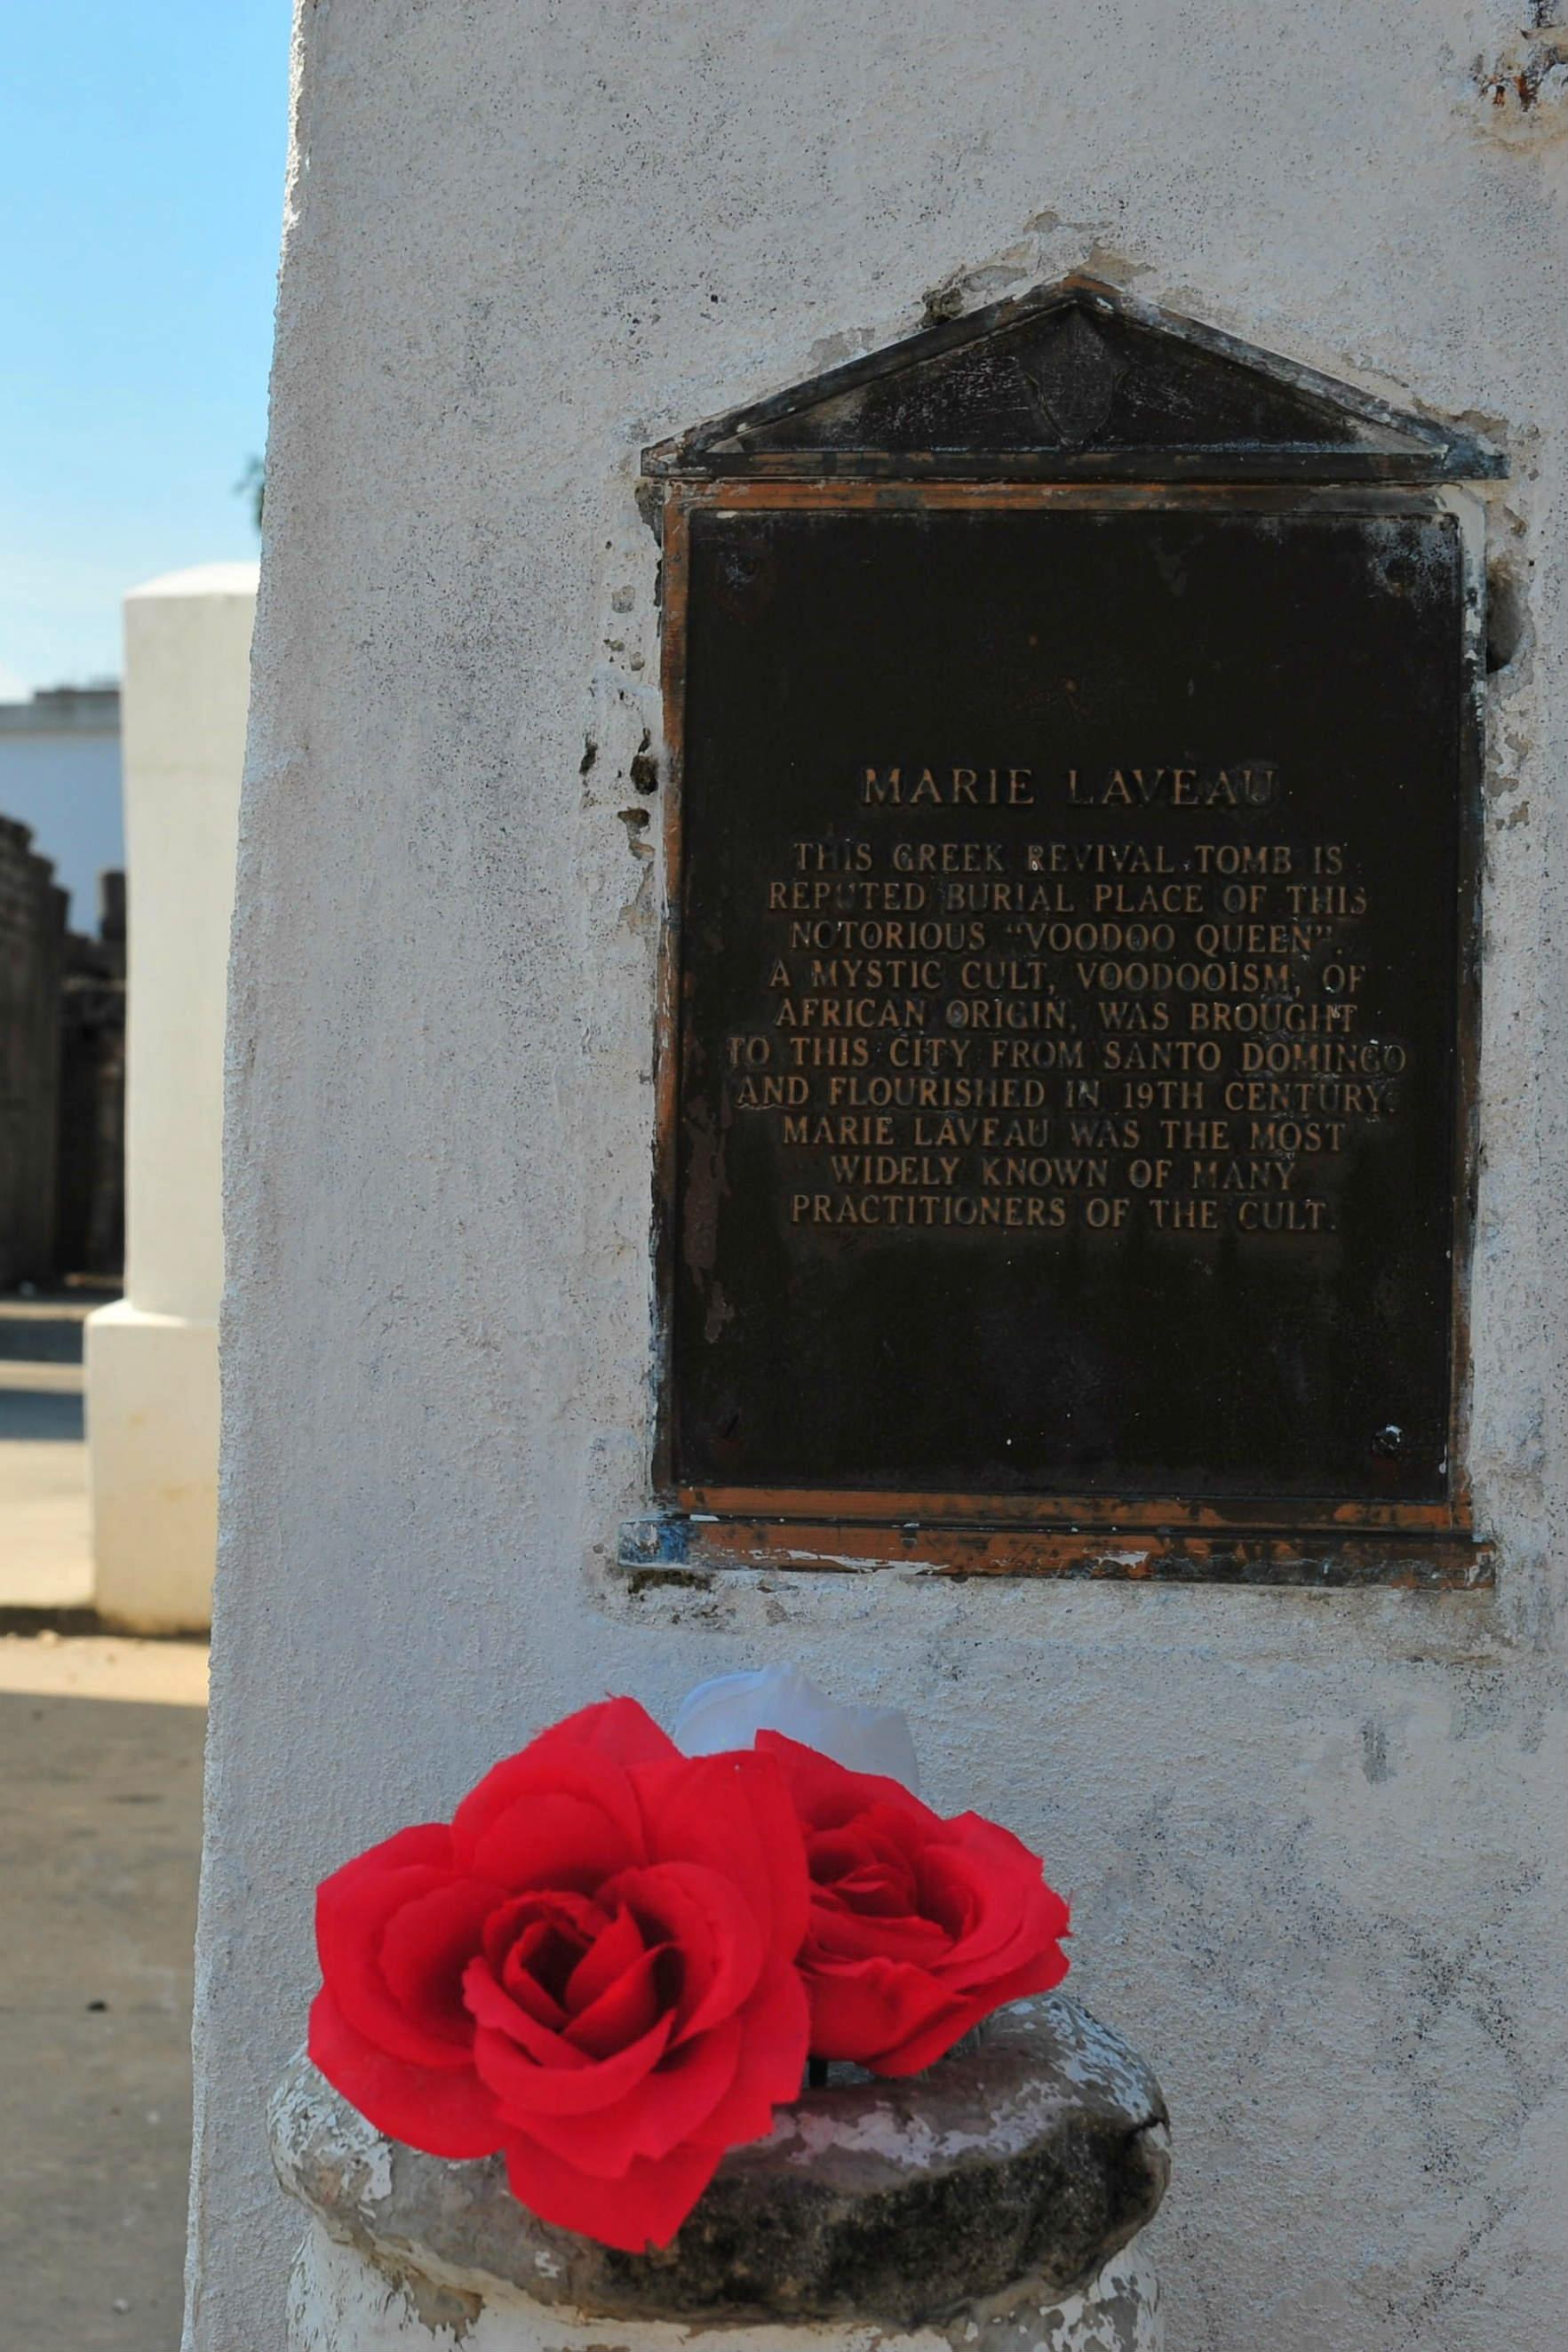 OFFERGAVE: Etter sin død i 1881 har Marie Laveau fått status som byens egen voodoo-dronning. I USA er det bare Elvis Presley som får flere besøkende ved graven enn henne. Nesten hver dag legges det nye gaver foran det lille hvite bygget i St. Louis Cementery #1.